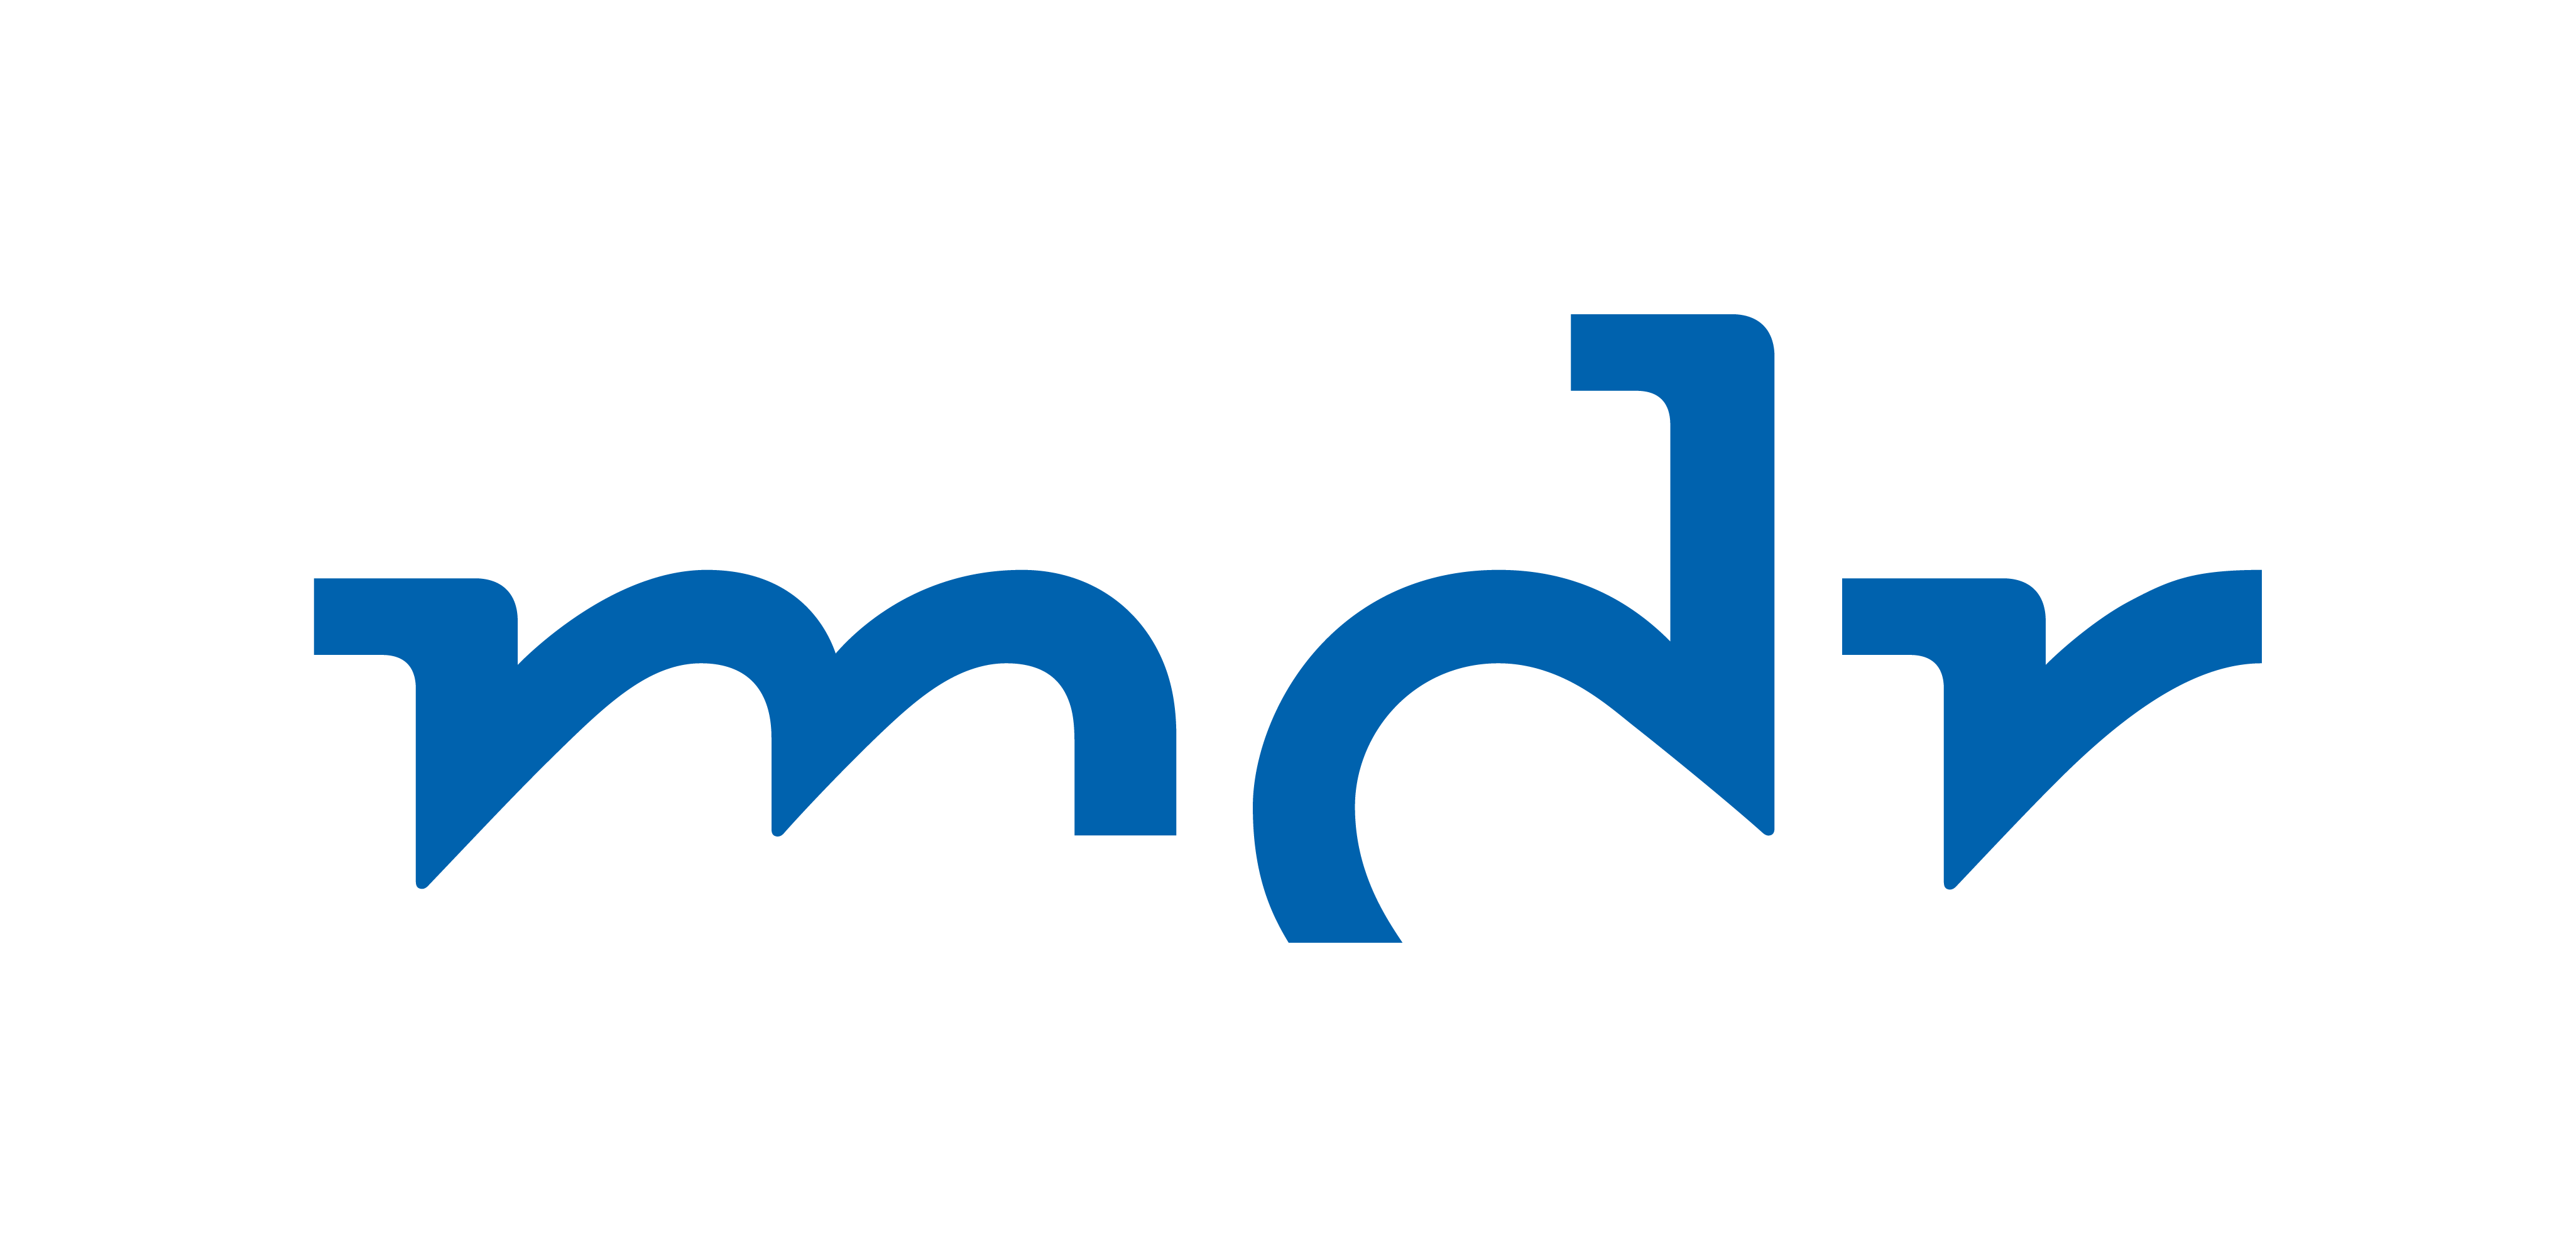 MDR Logo - Mdr Logo 2017.png